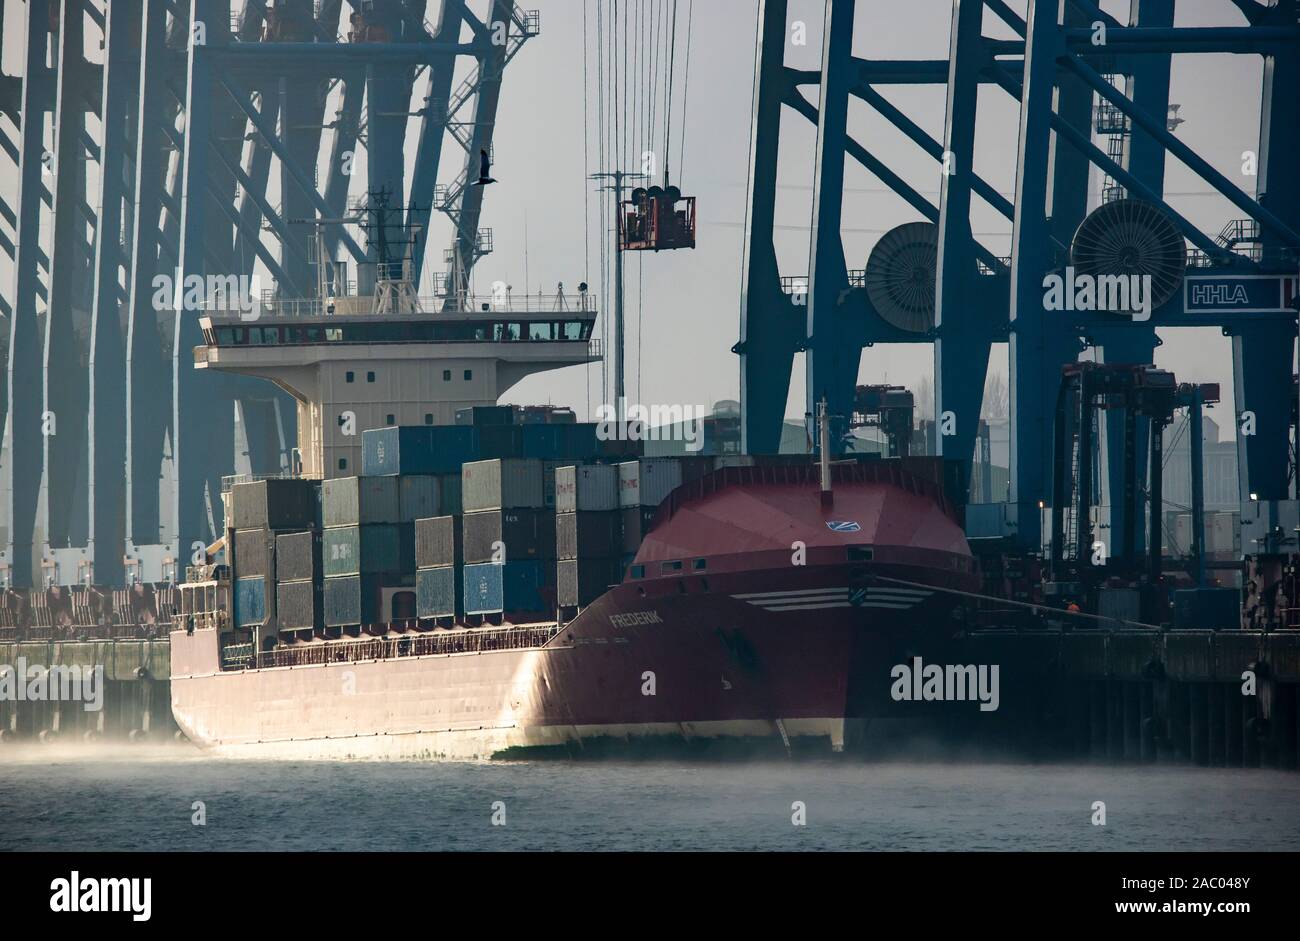 Container Terminal Tollerort im Hamburger Hafen, Nebel, Containerschiff wird be- und entladen, Stock Photo